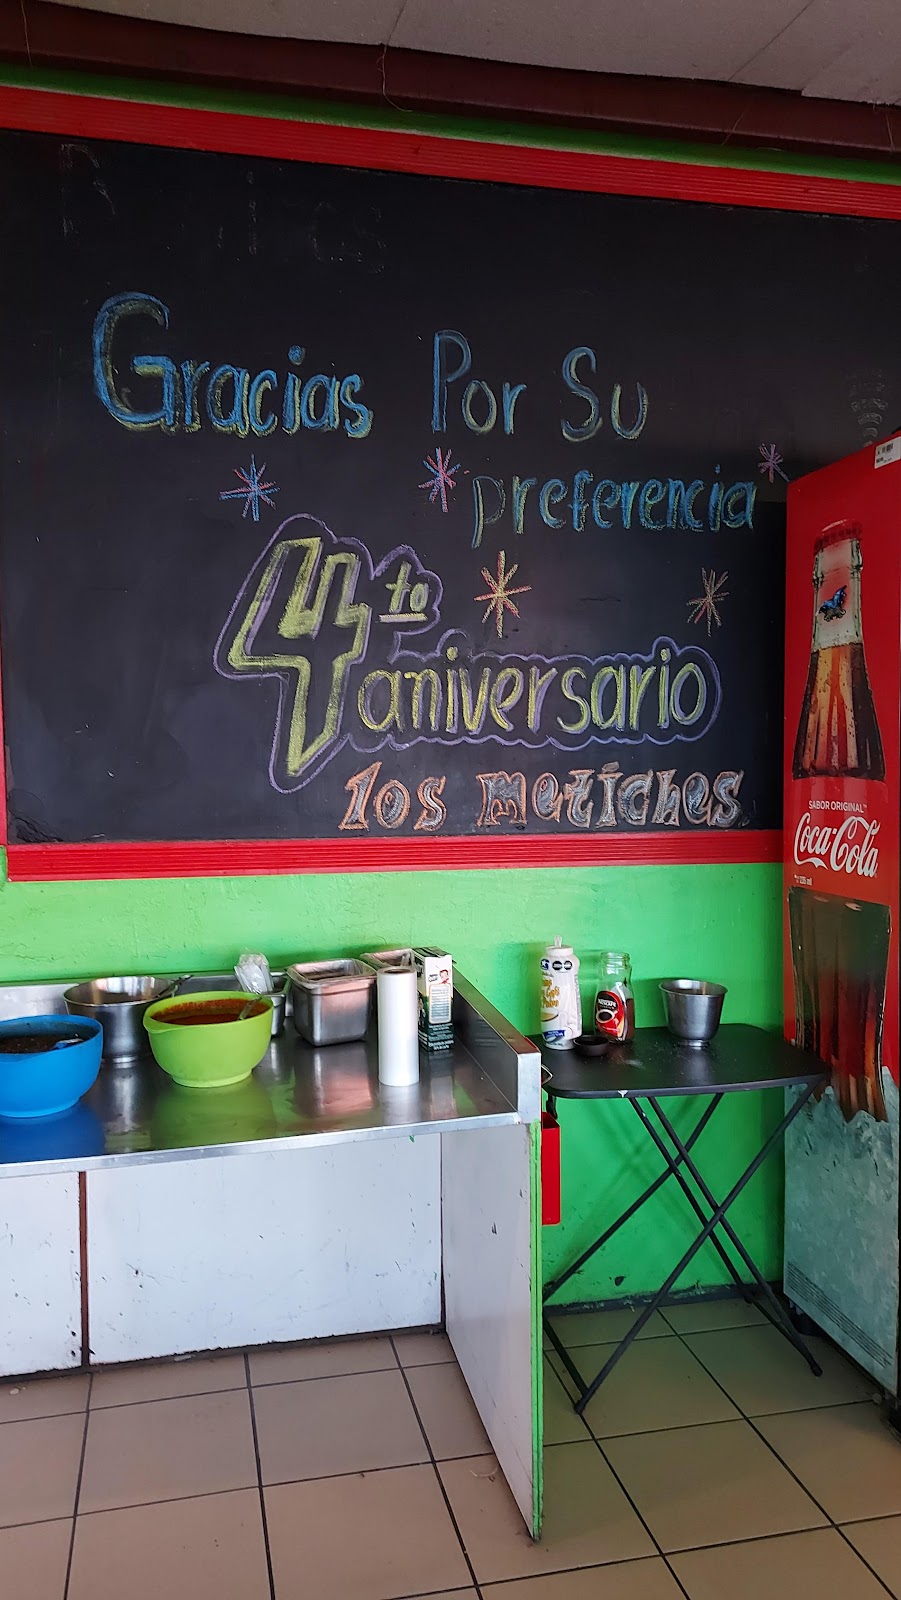 Burritos Los Metiches | Av de la Raza 5846, Mascareñas, 32340 Cd Juárez, Chih., Mexico | Phone: 656 694 2825